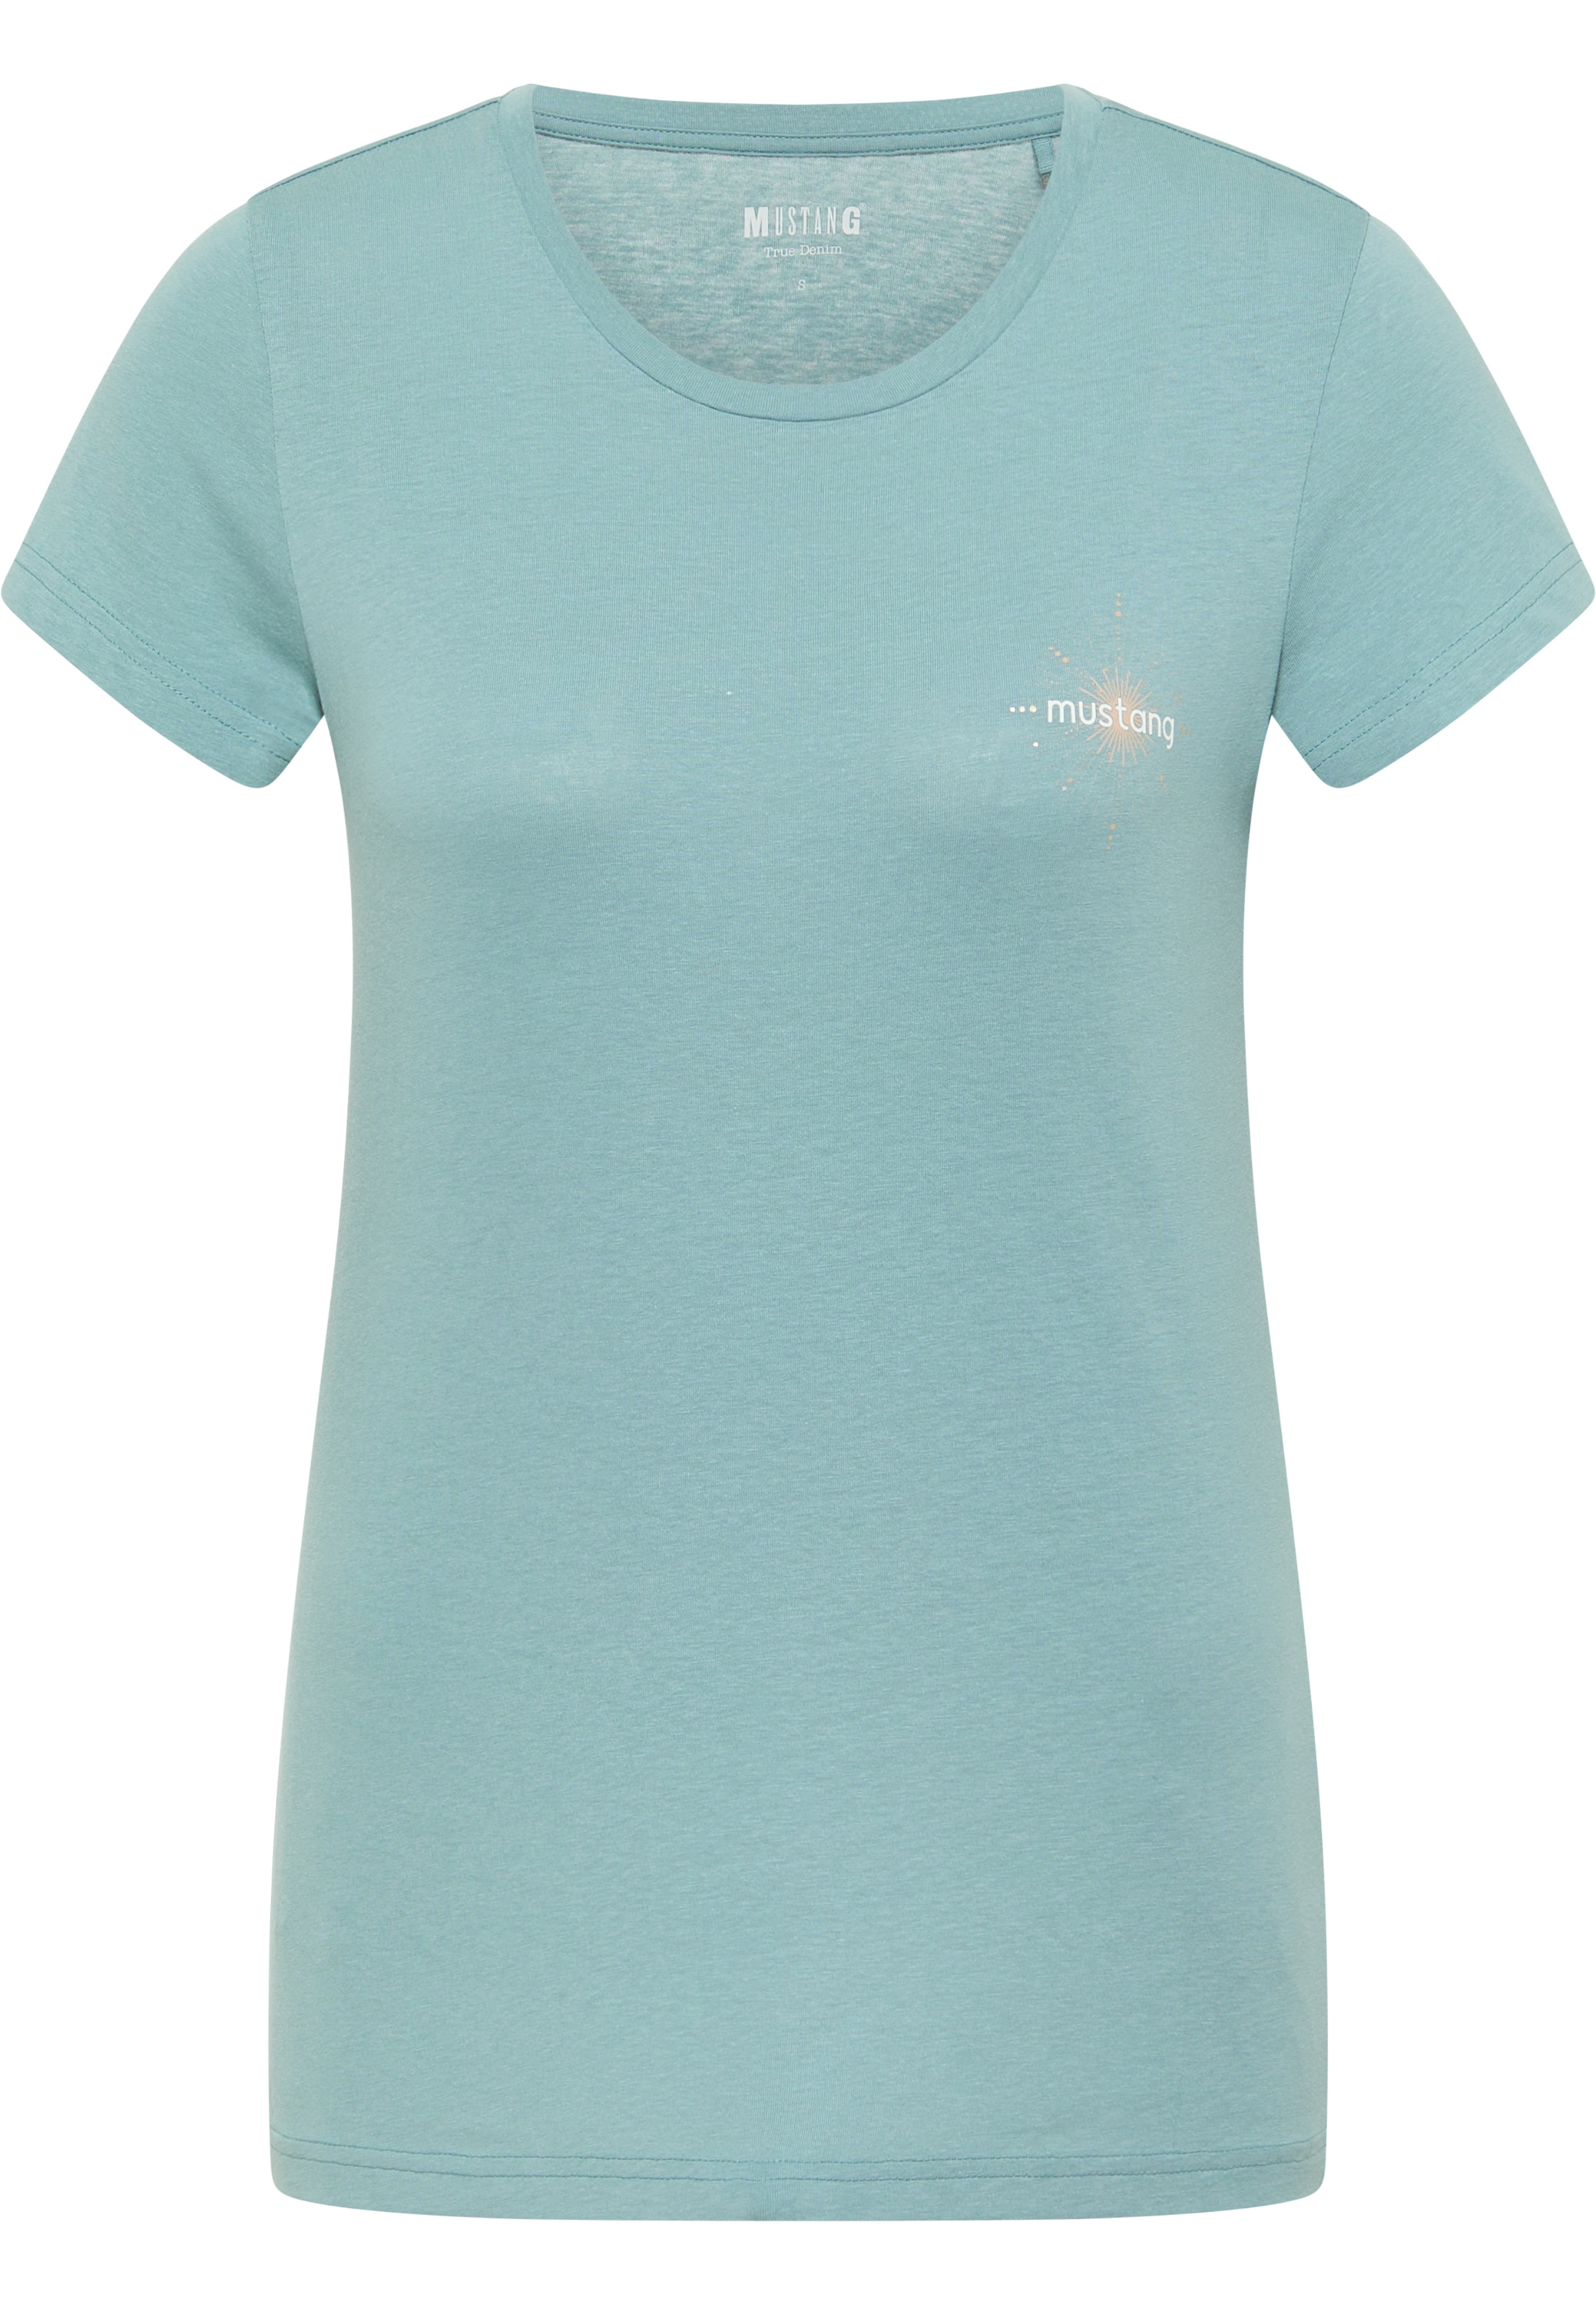 T-Shirt Chestprint« MUSTANG OTTO »Style C Alexia online bestellen bei